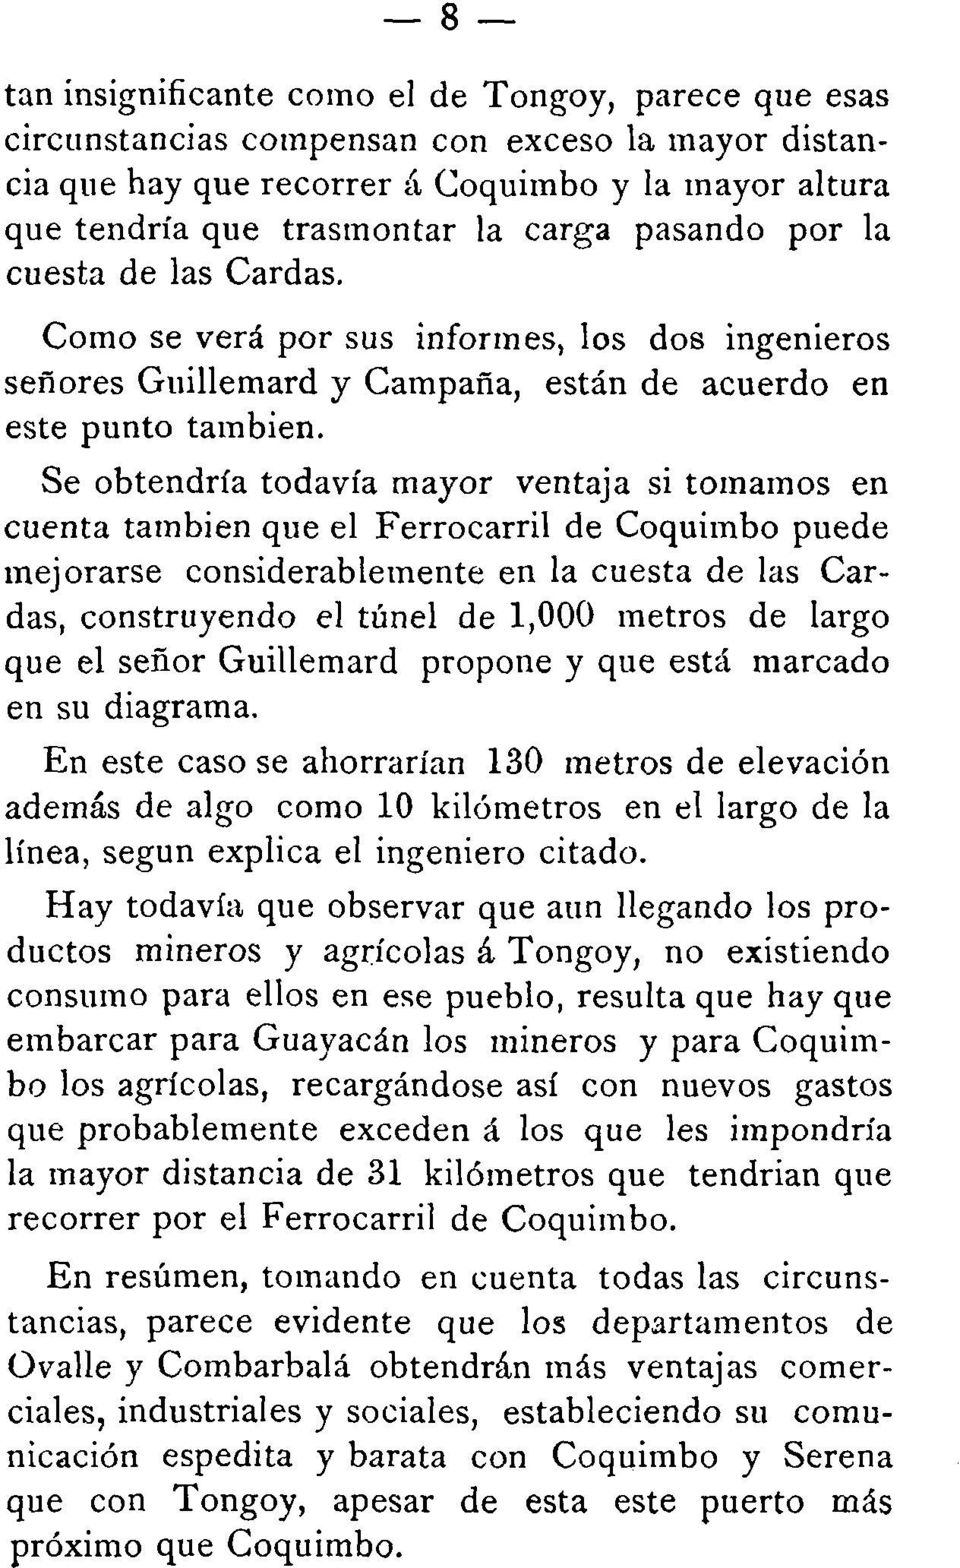 Se obtendría todavía mayor ventaja si tomamos en cuenta tambien que el Ferrocarril de Coquimbo puede mejorarse considerablemente en la cuesta de las Cardas, construyendo el túnel de 1,000 metros de